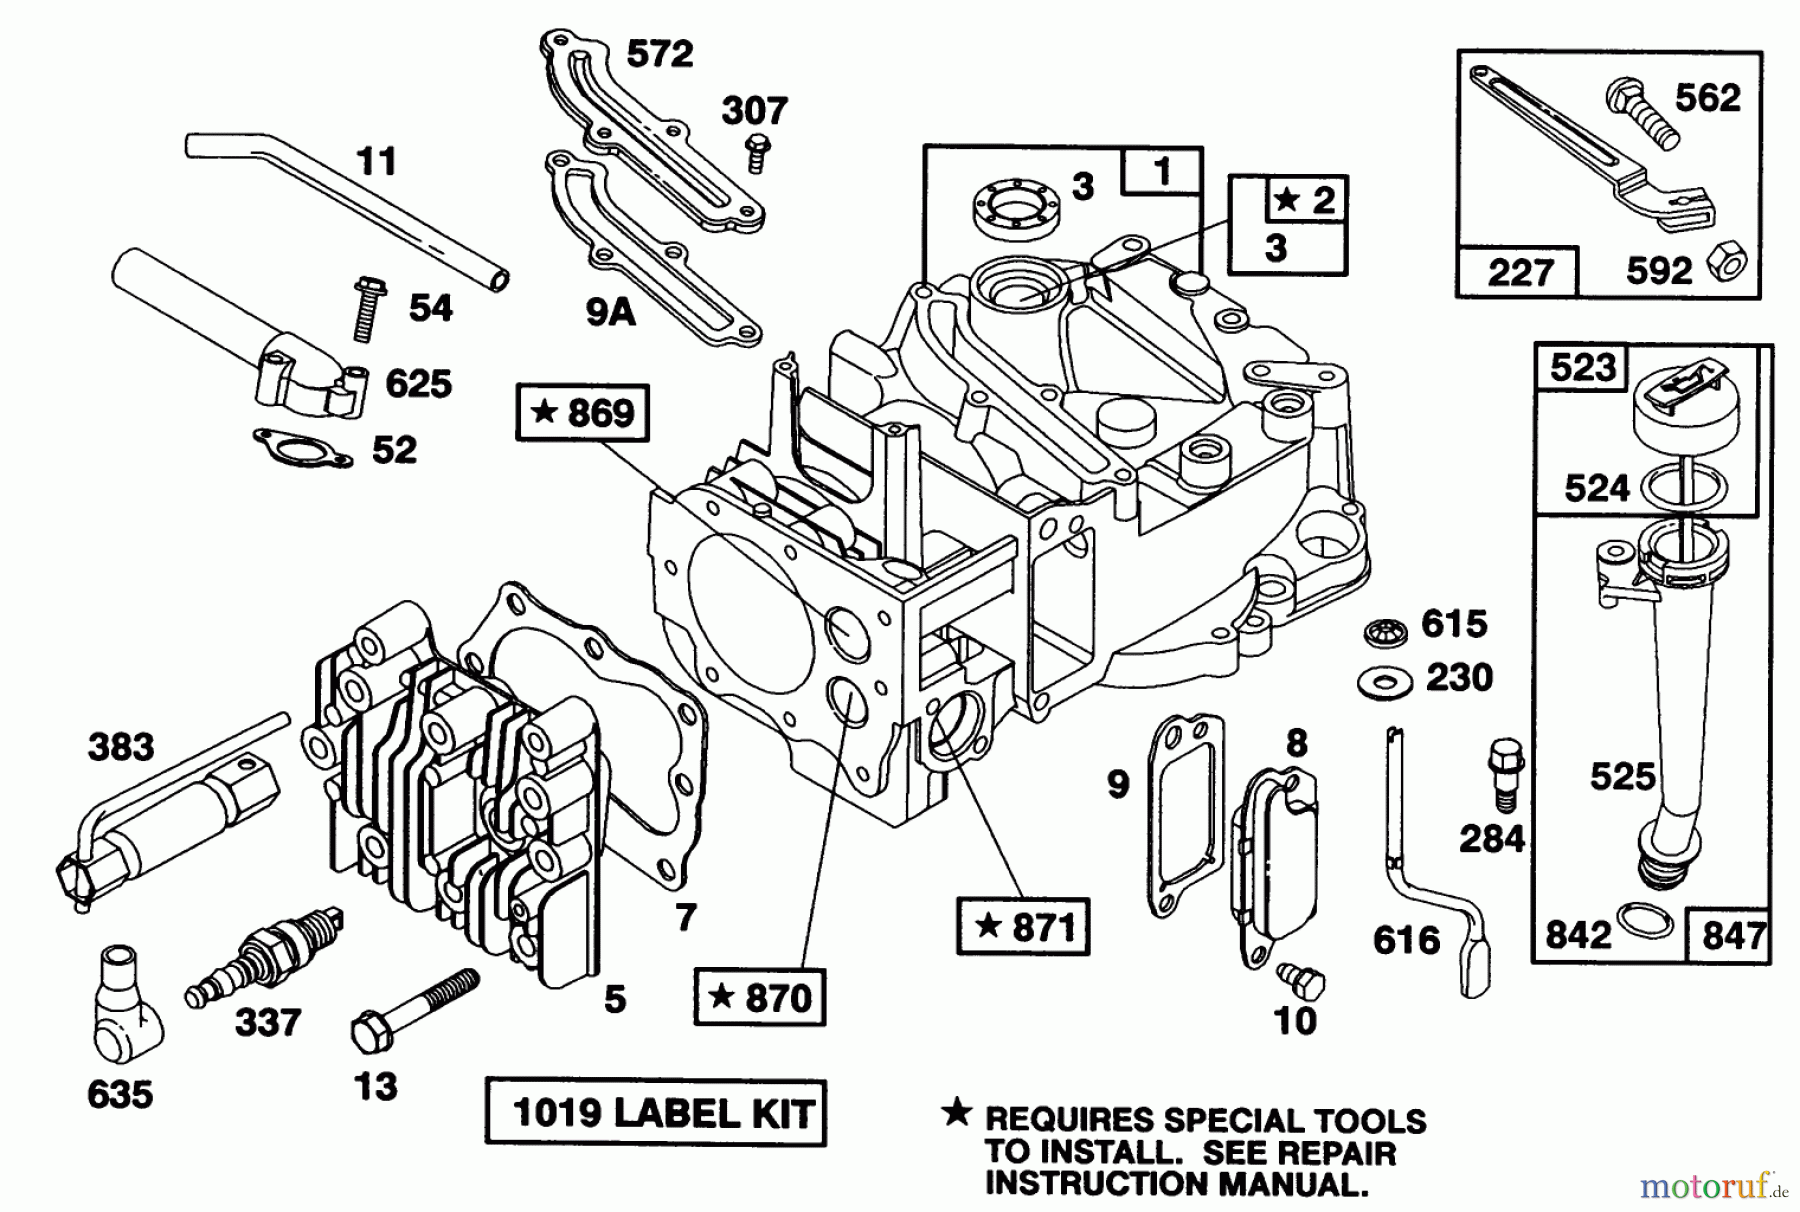  Toro Neu Mowers, Walk-Behind Seite 1 16400 - Toro Lawnmower, 1991 (1000001-1999999) ENGINE BRIGGS & STRATTON MODEL 122702-3171-01 #1